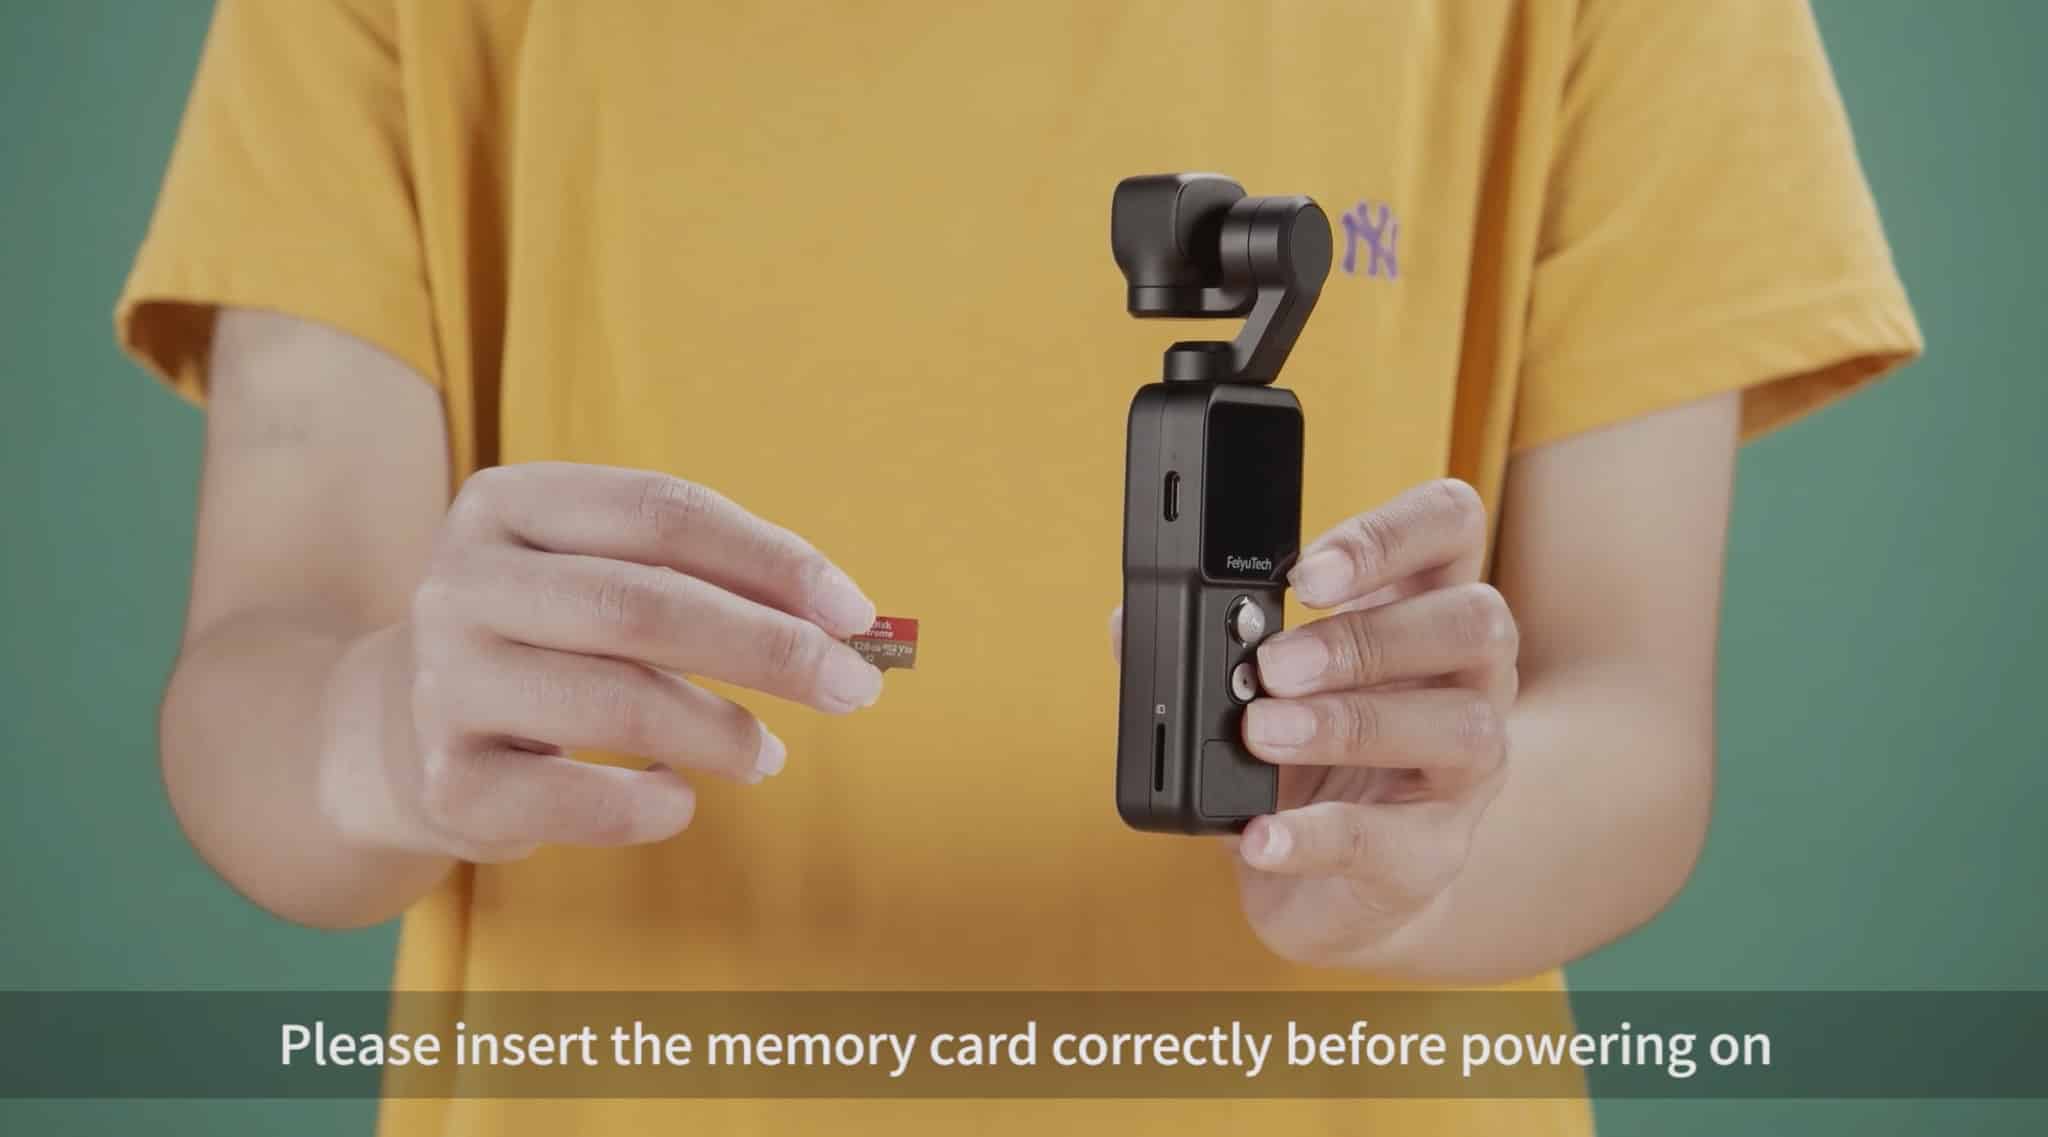 Những thứ cần nhớ và các thao tác cơ bản cơ bản trước khi sử dụng camera hành trình Feiyu Pocket 2